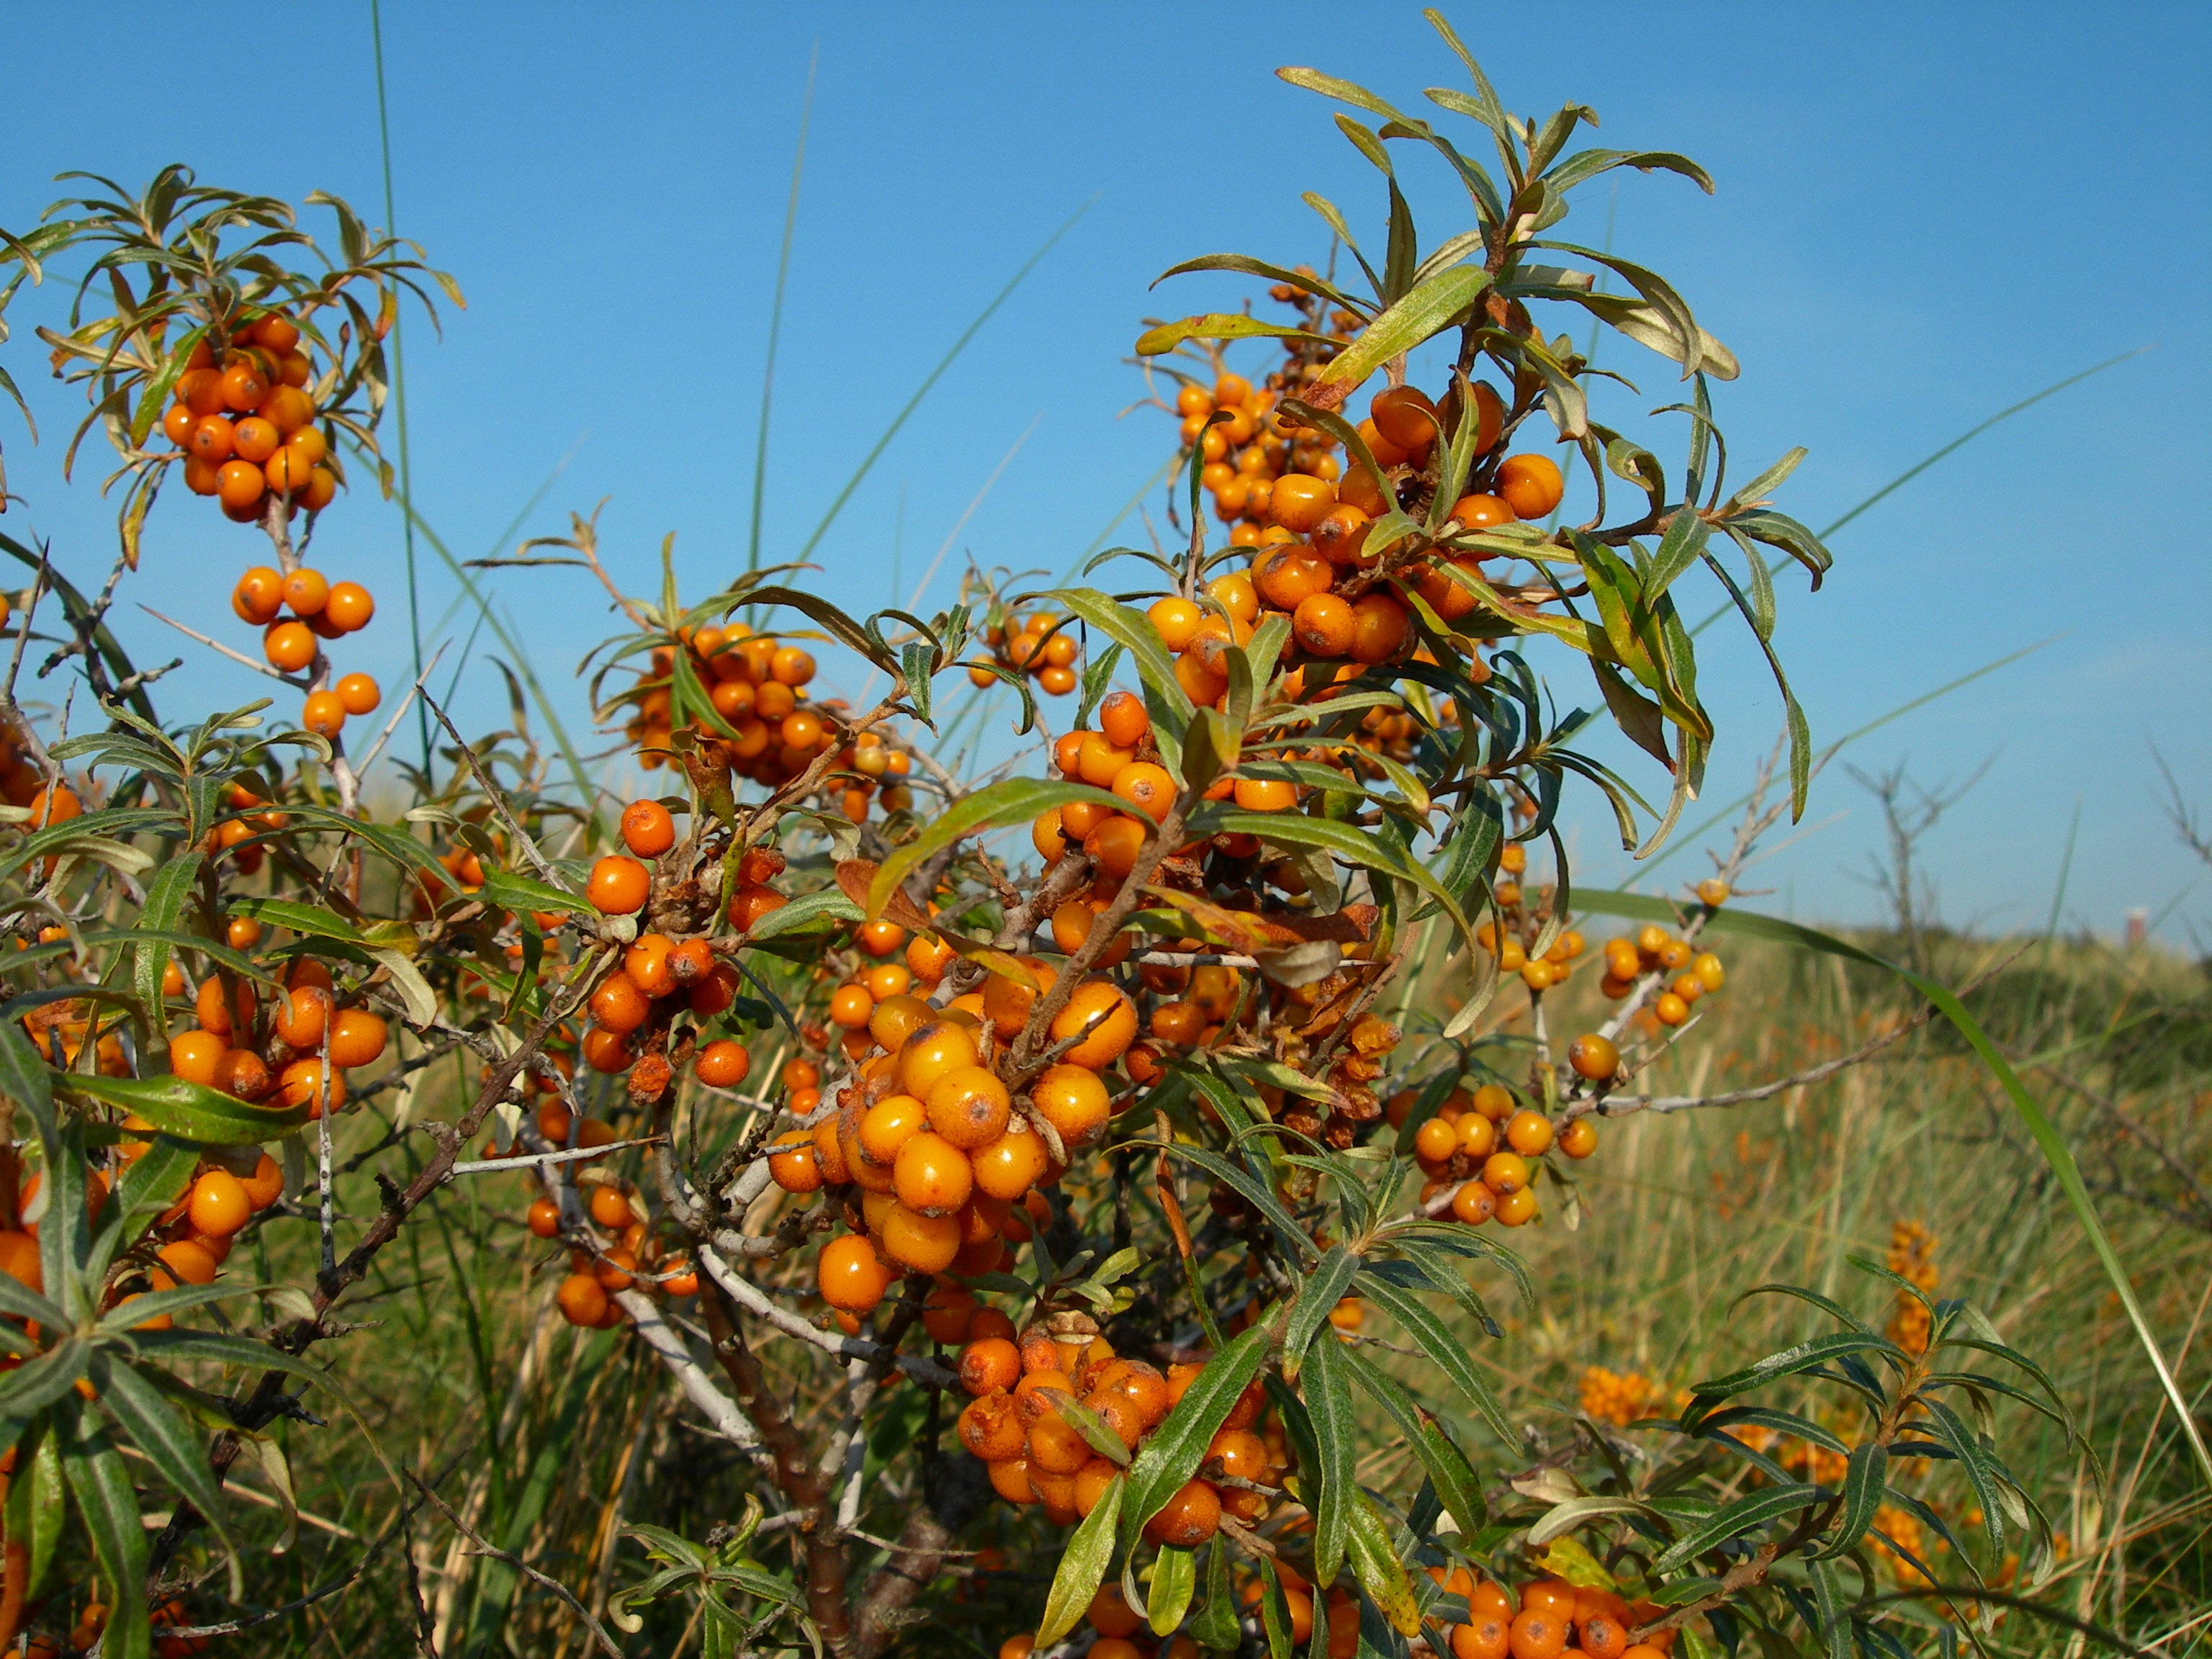 Die orangenen Früchte des Sanddornstrauchs vor einem blauen Himmel (Mausklick führt zur vergrößerten Ansicht)